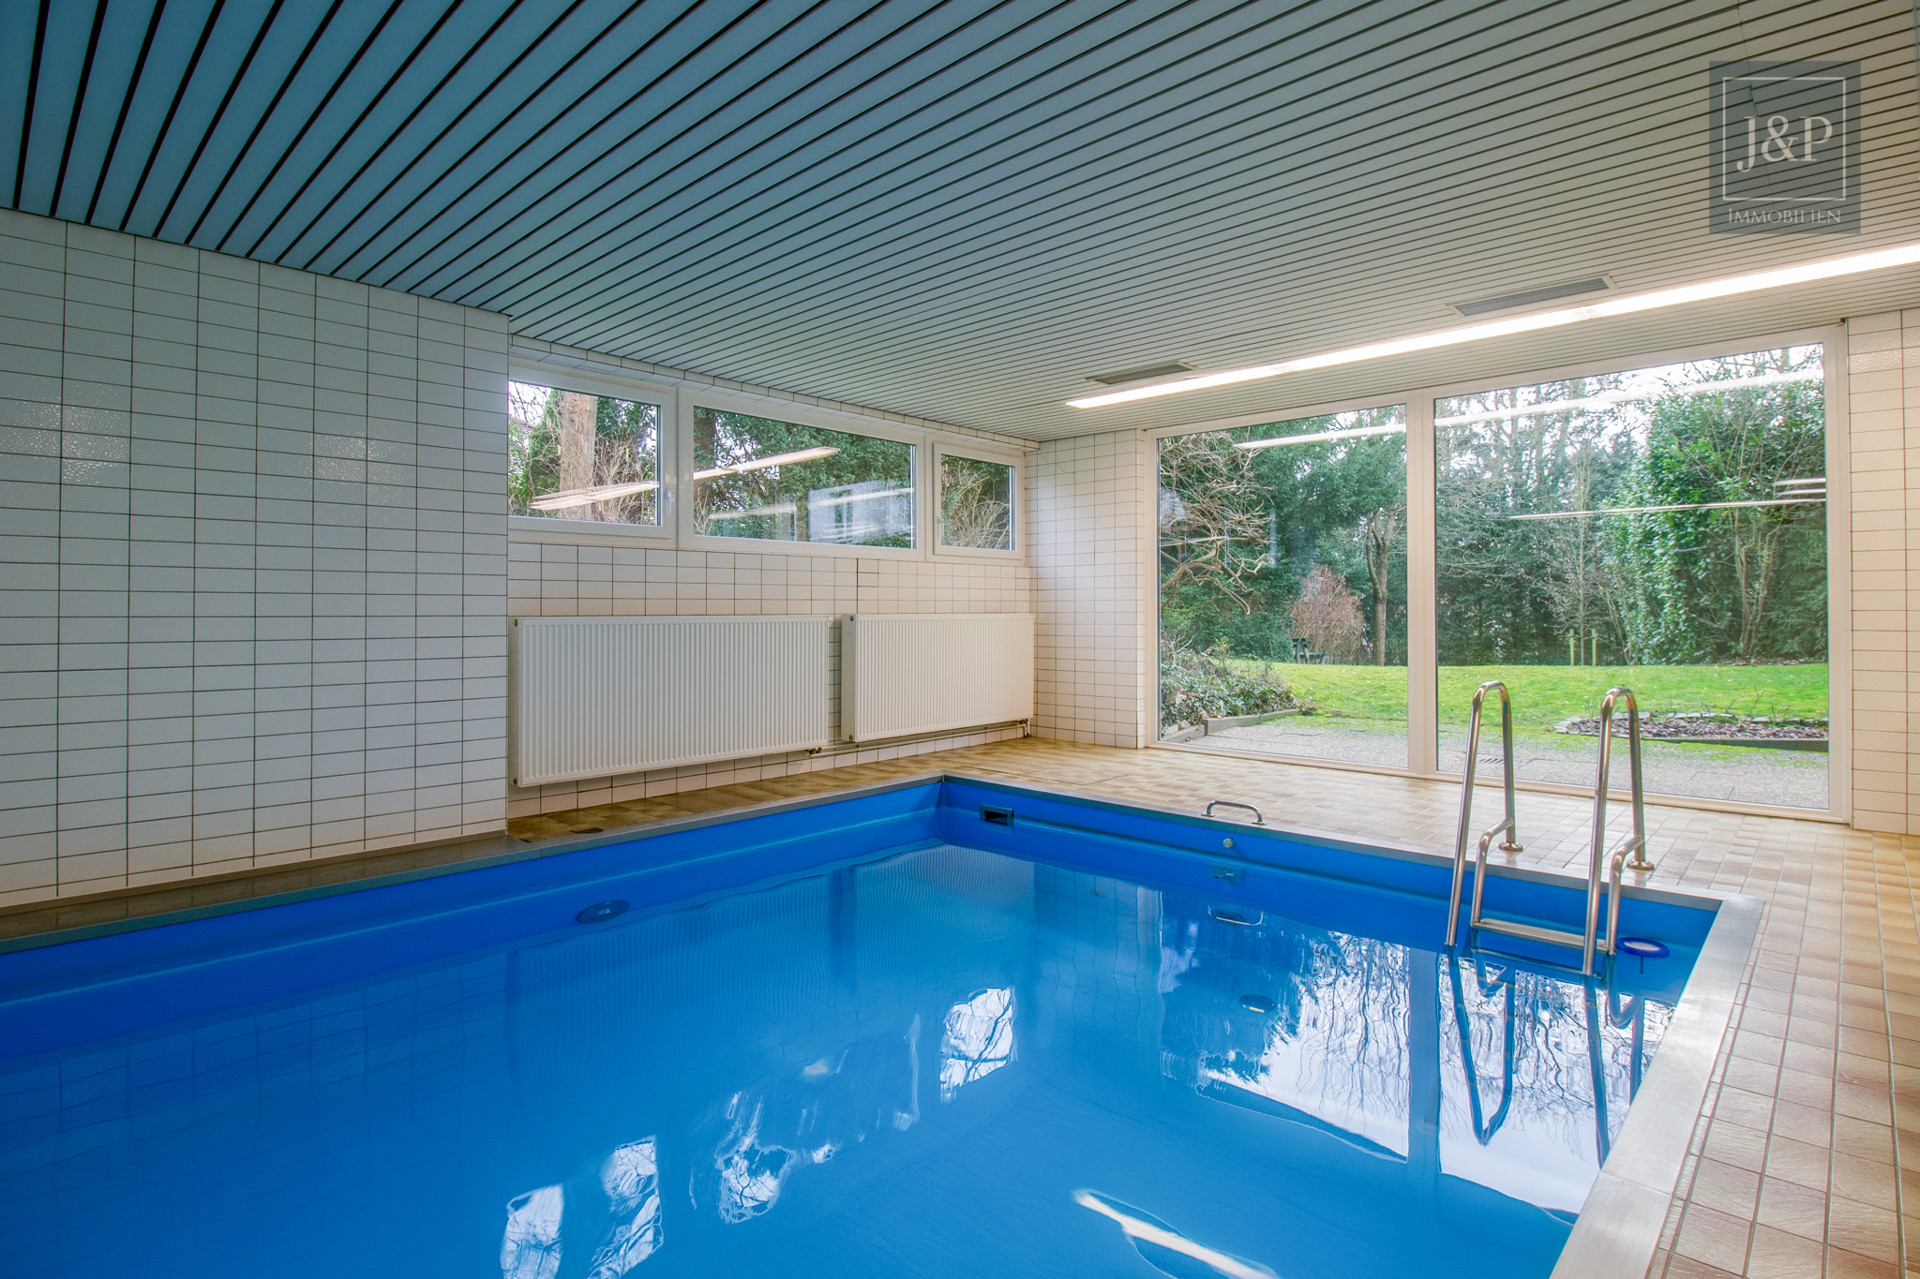 Komplett sanierte Eigentumswohnung am Bad Homburger Kurpark mit Pool, Sauna & gepflegten Gartenbereich - Poolbereich